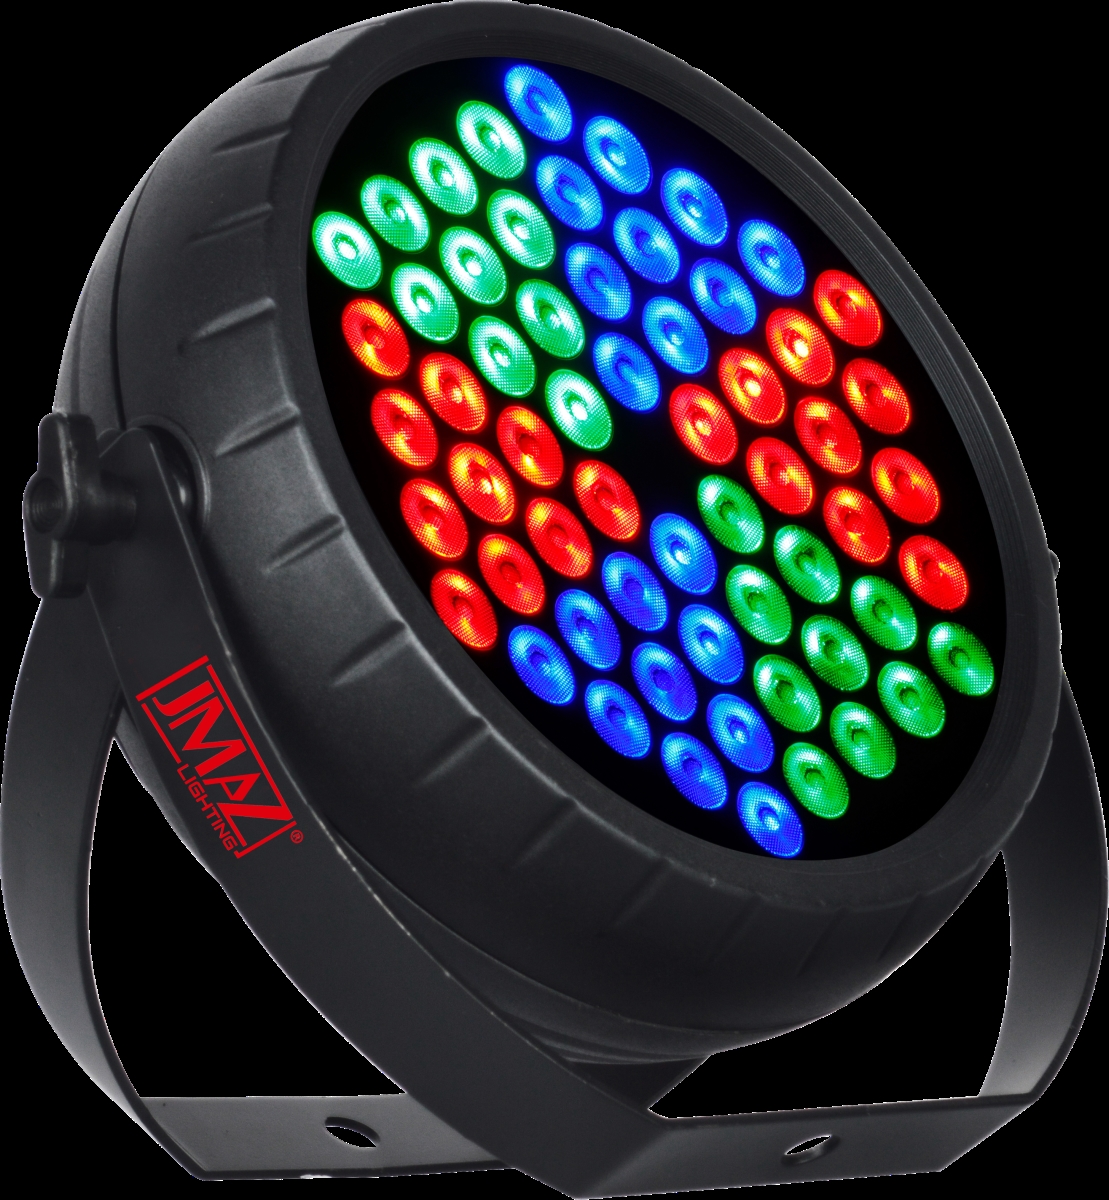 Picture of Jmaz Lighting JZ1026 TRI60 Radiant Par Wash Fixture with 60 Tri-Color 3-in-1 RGB 3W LEDs